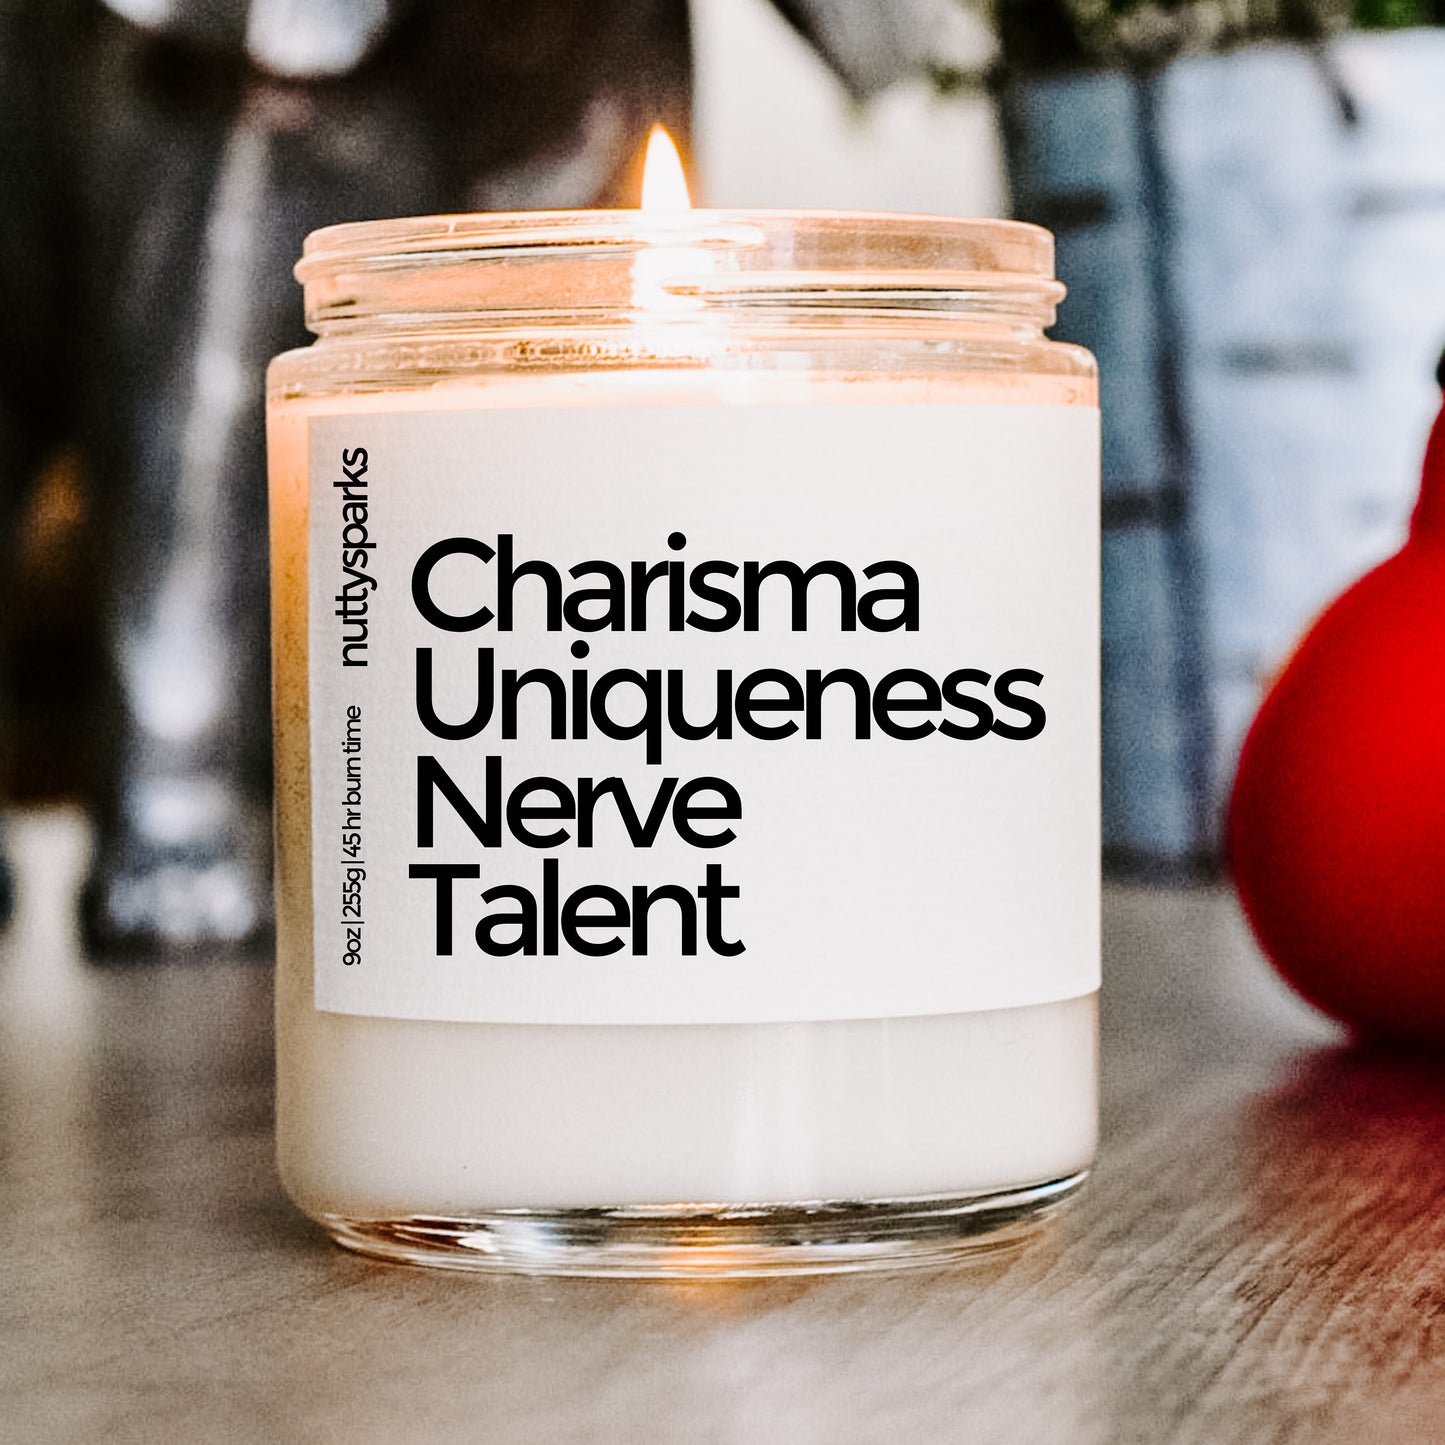 charisma uniqueness nerve talent